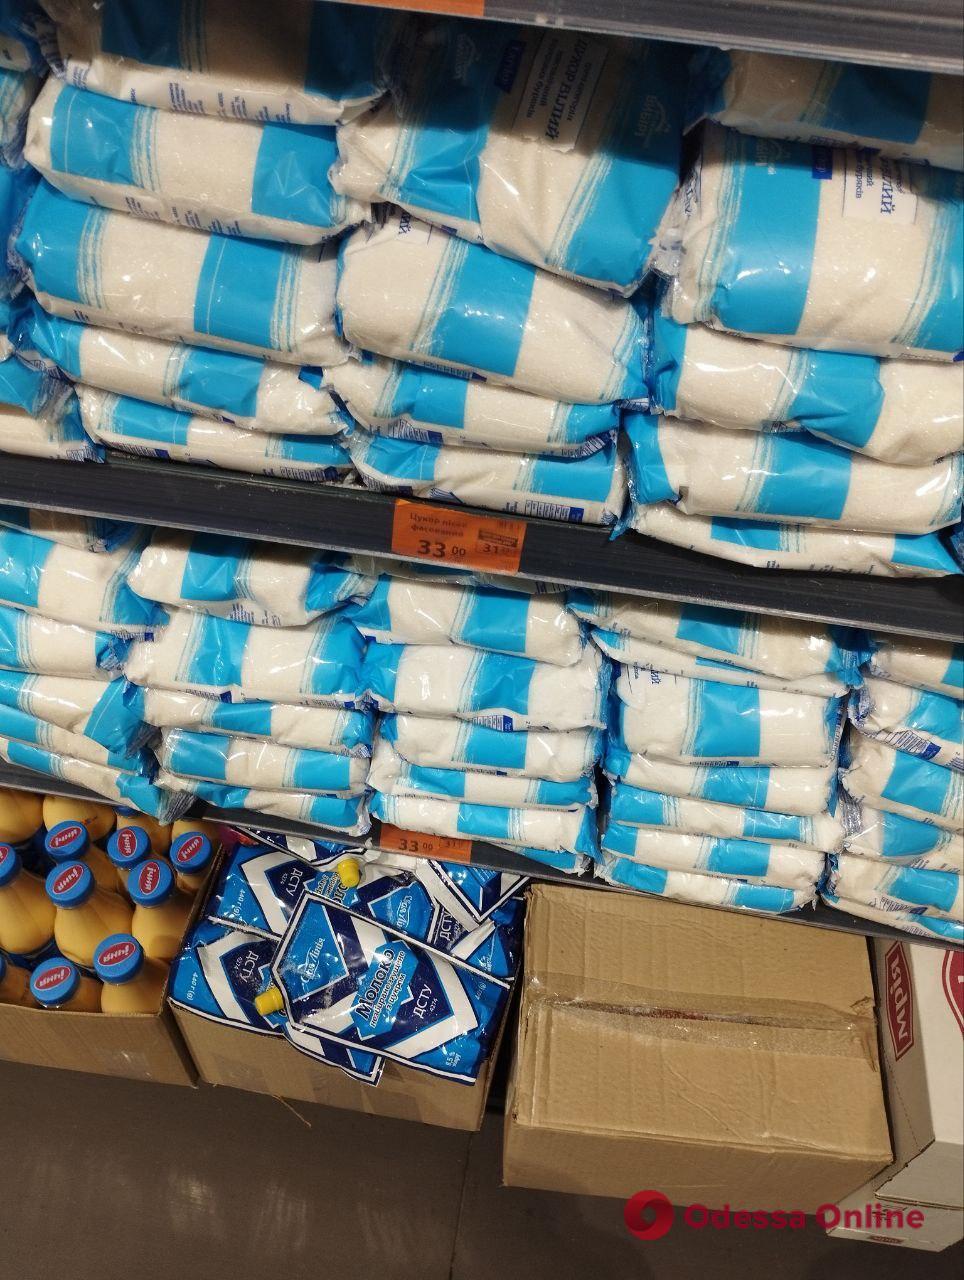 Цукор, гречка та соняшникова олія: огляд цін в одеських супермаркетах